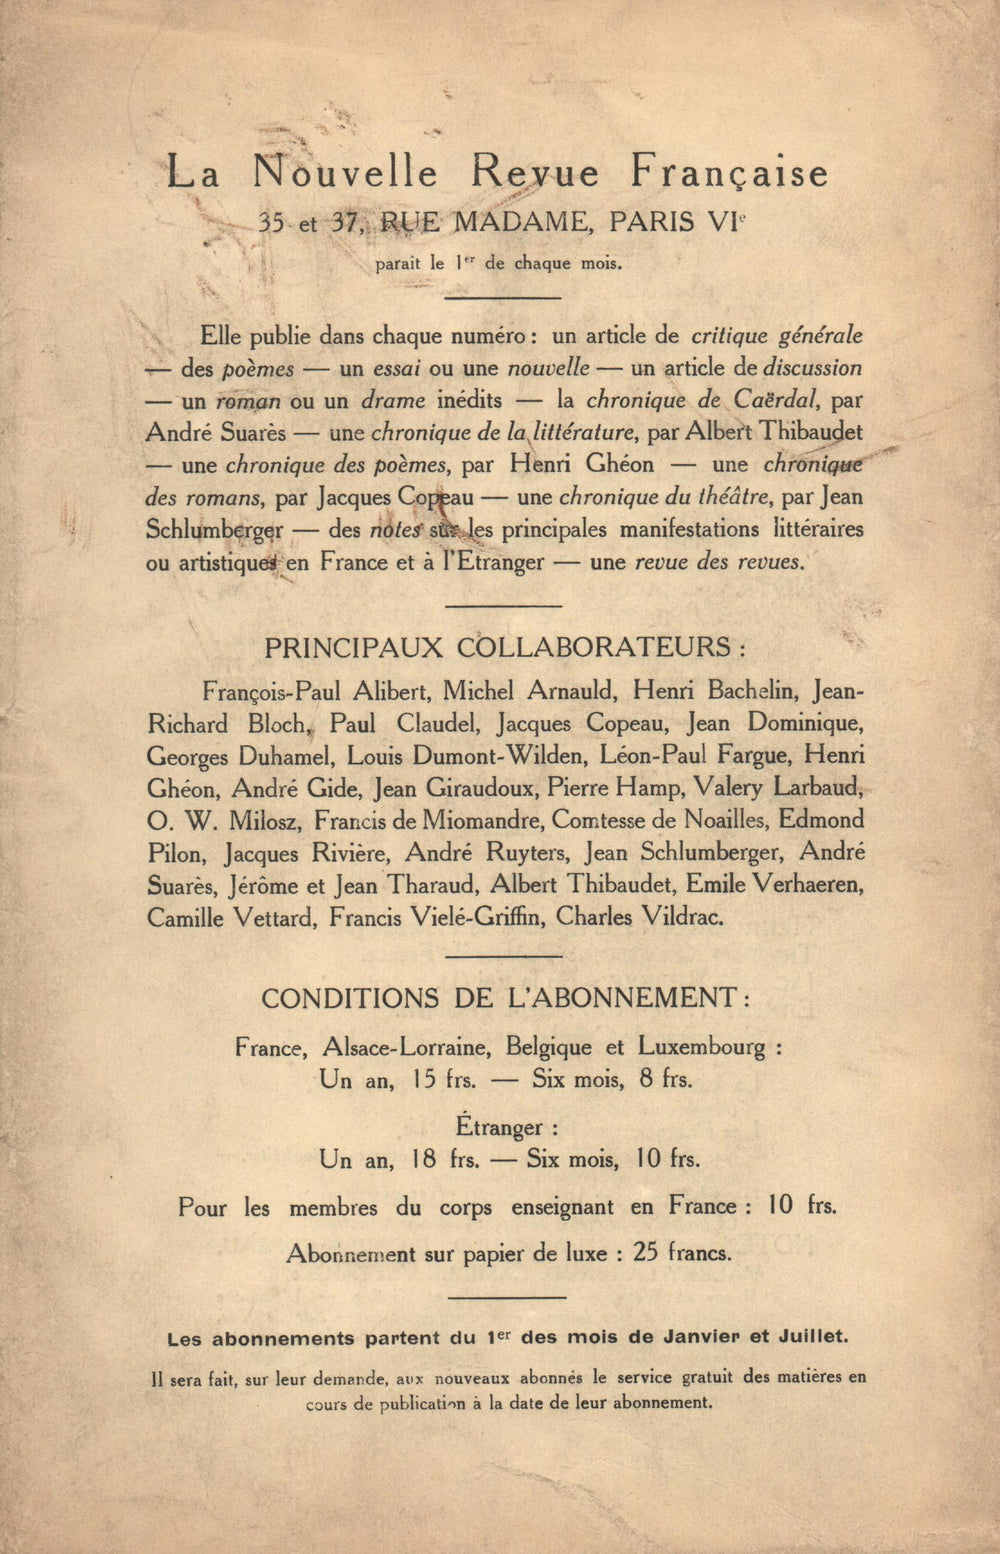 La Nouvelle Revue Française N' 48 (Décembre 1912)